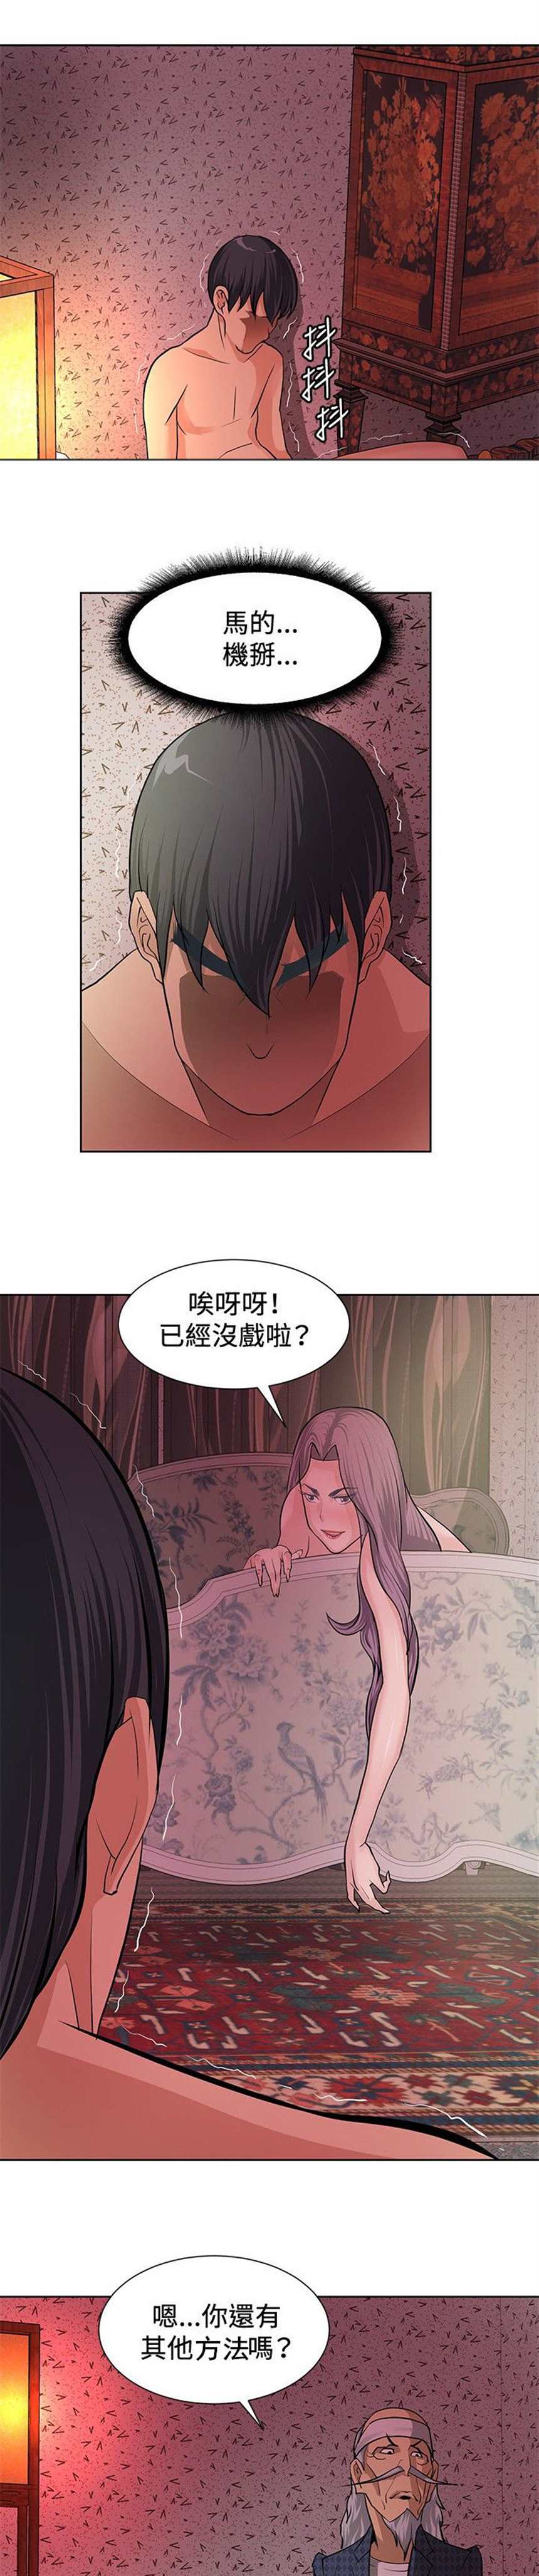 韩国漫画《催眠师又名迷惑师徒》(6)(点击浏览下一张趣图)